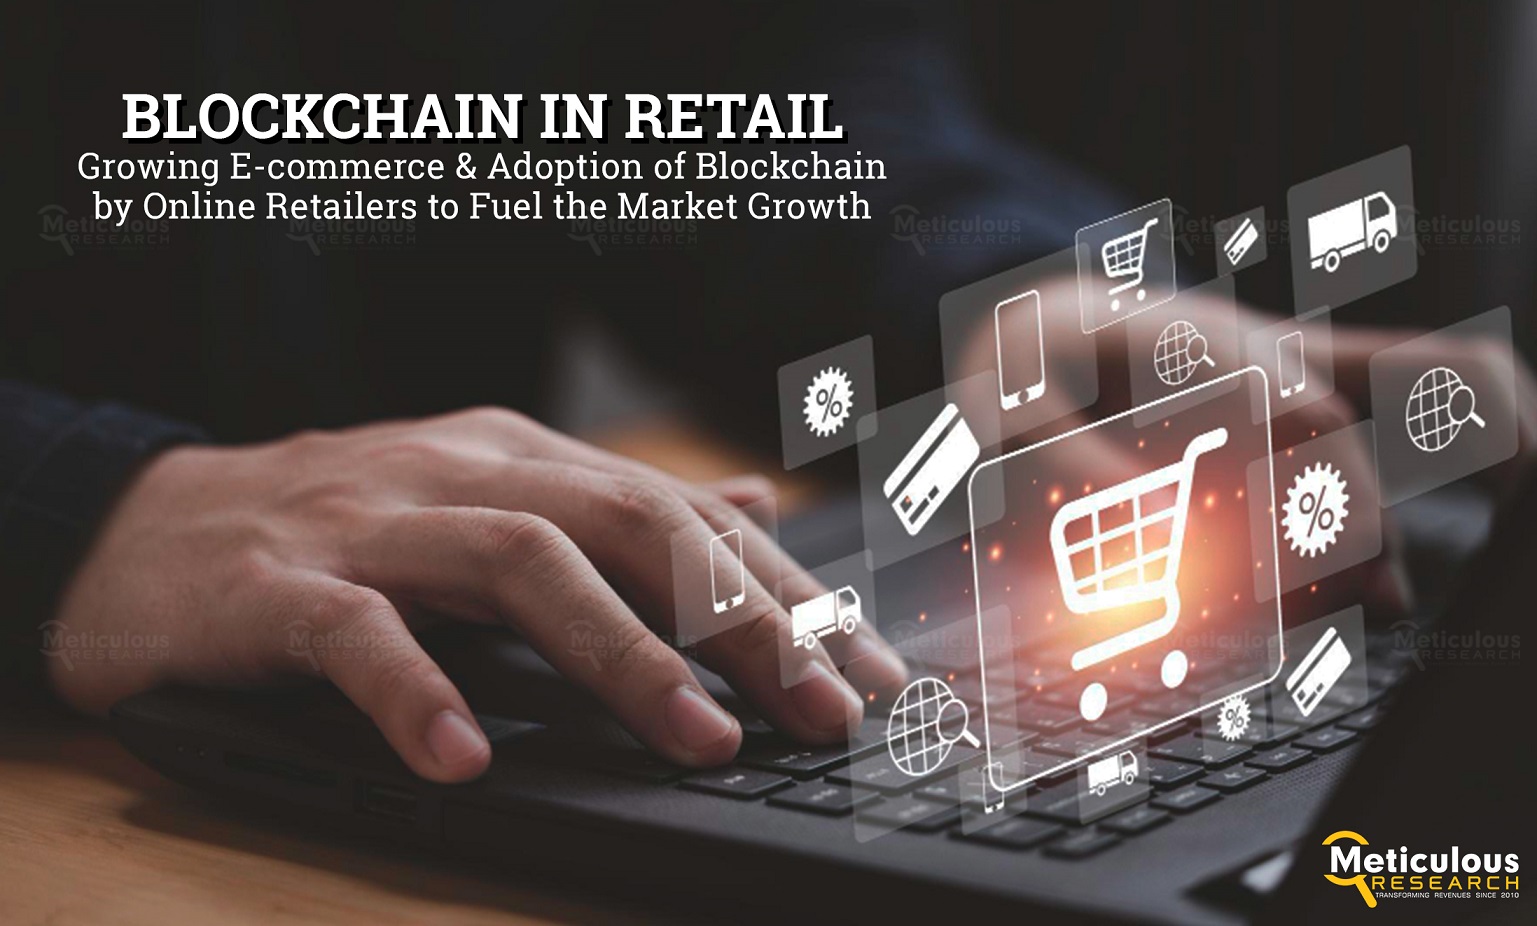 Blockchain in Retail Market